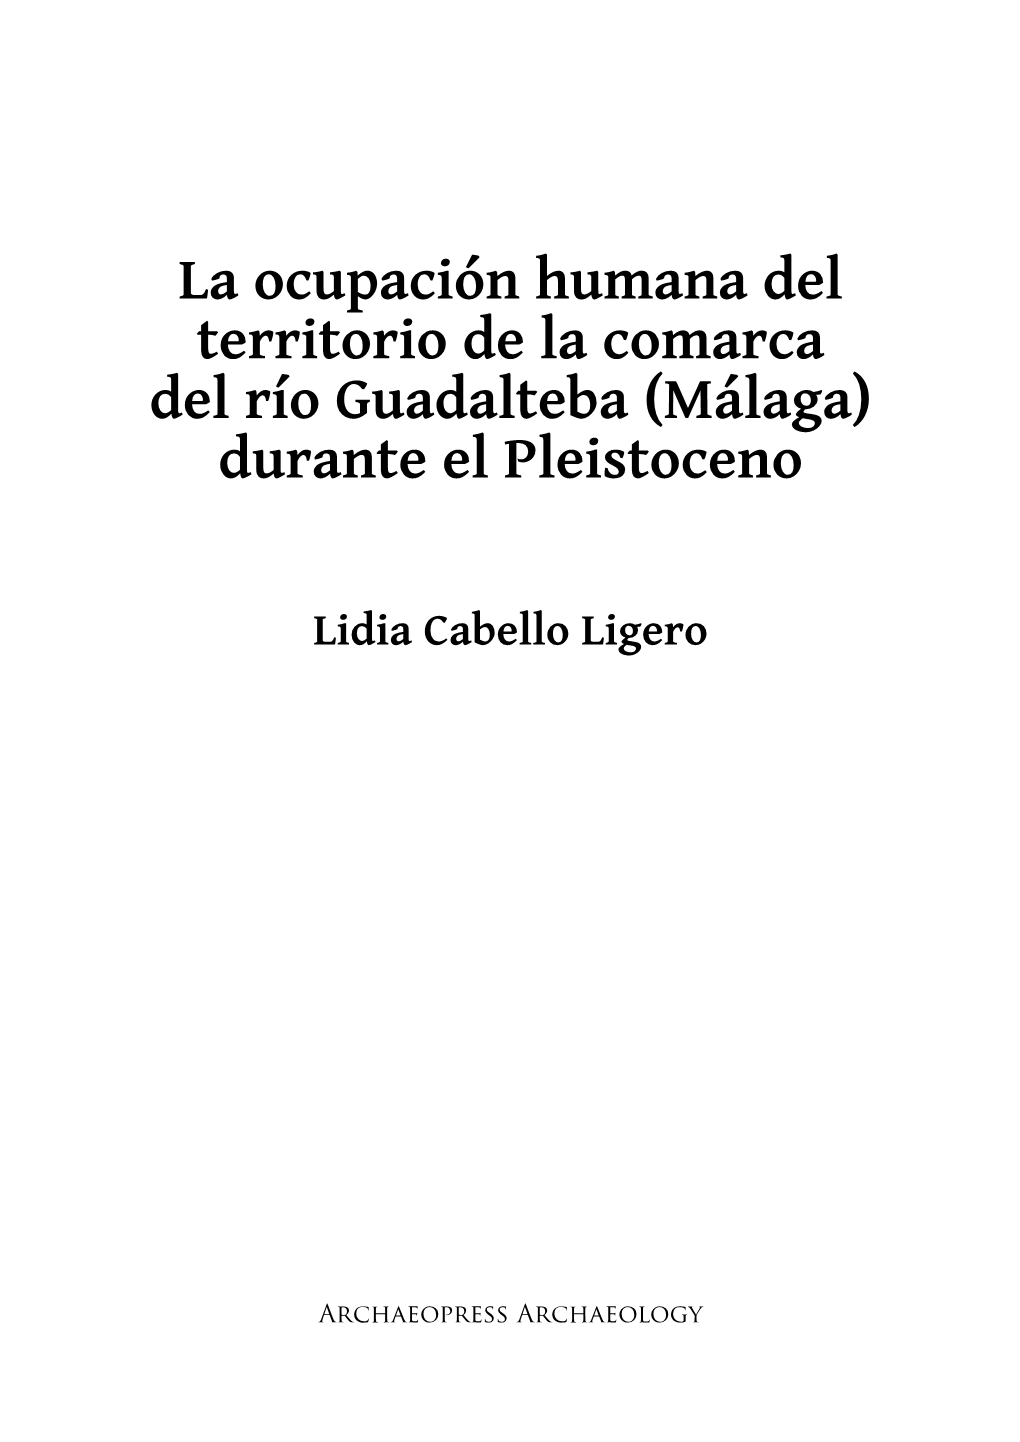 La Ocupación Humana Del Territorio De La Comarca Del Río Guadalteba (Málaga) Durante El Pleistoceno